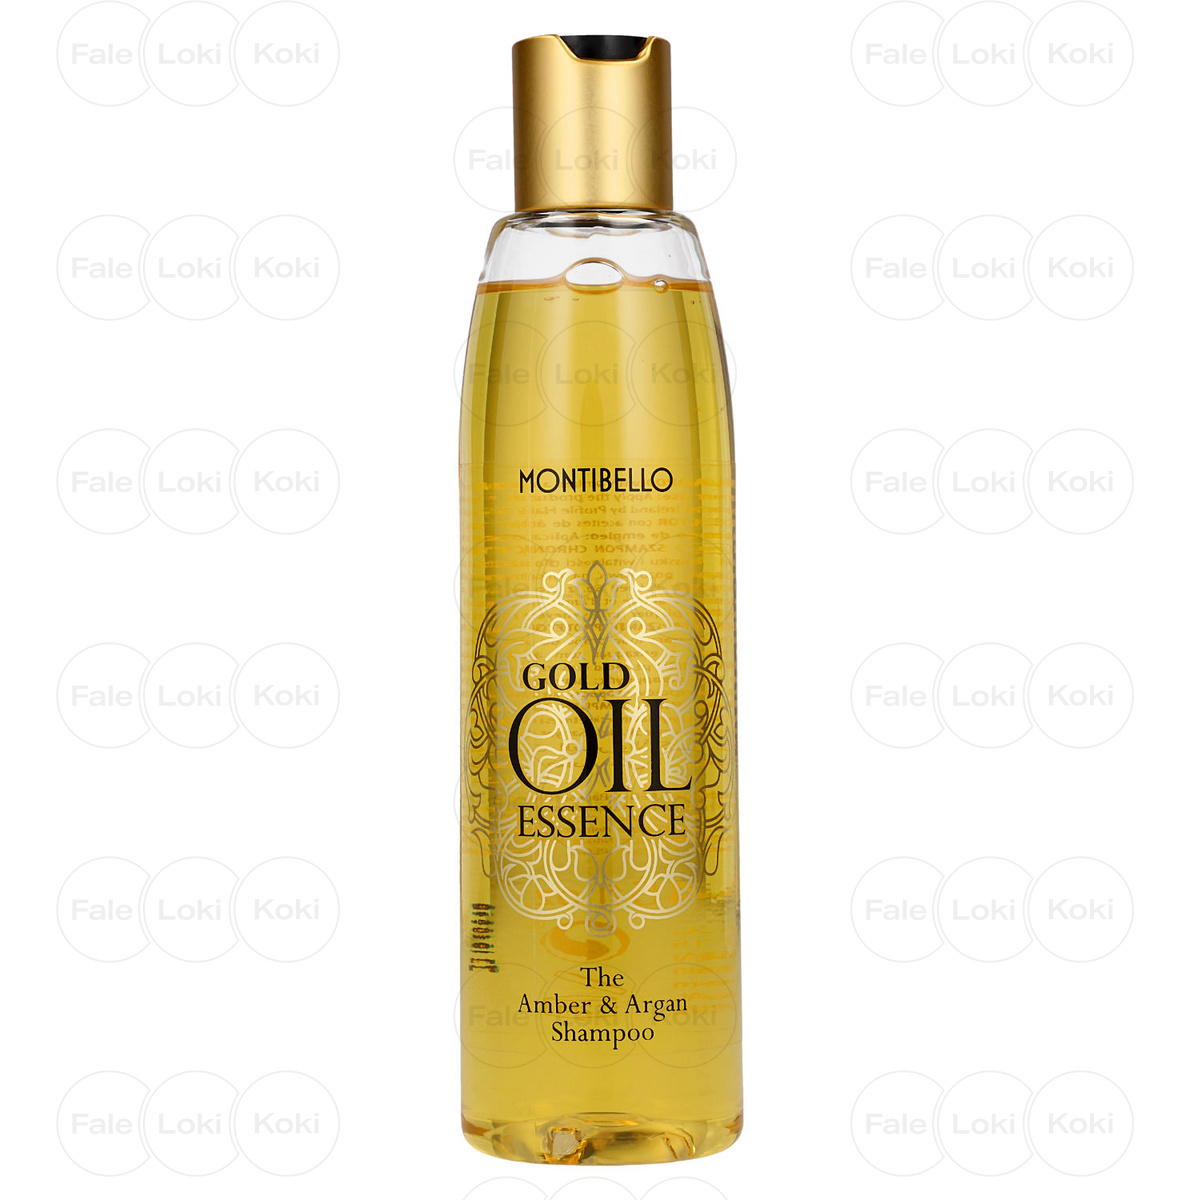 MONTIBELLO GOLD OIL ESSENCE szampon do włosów 250 ml